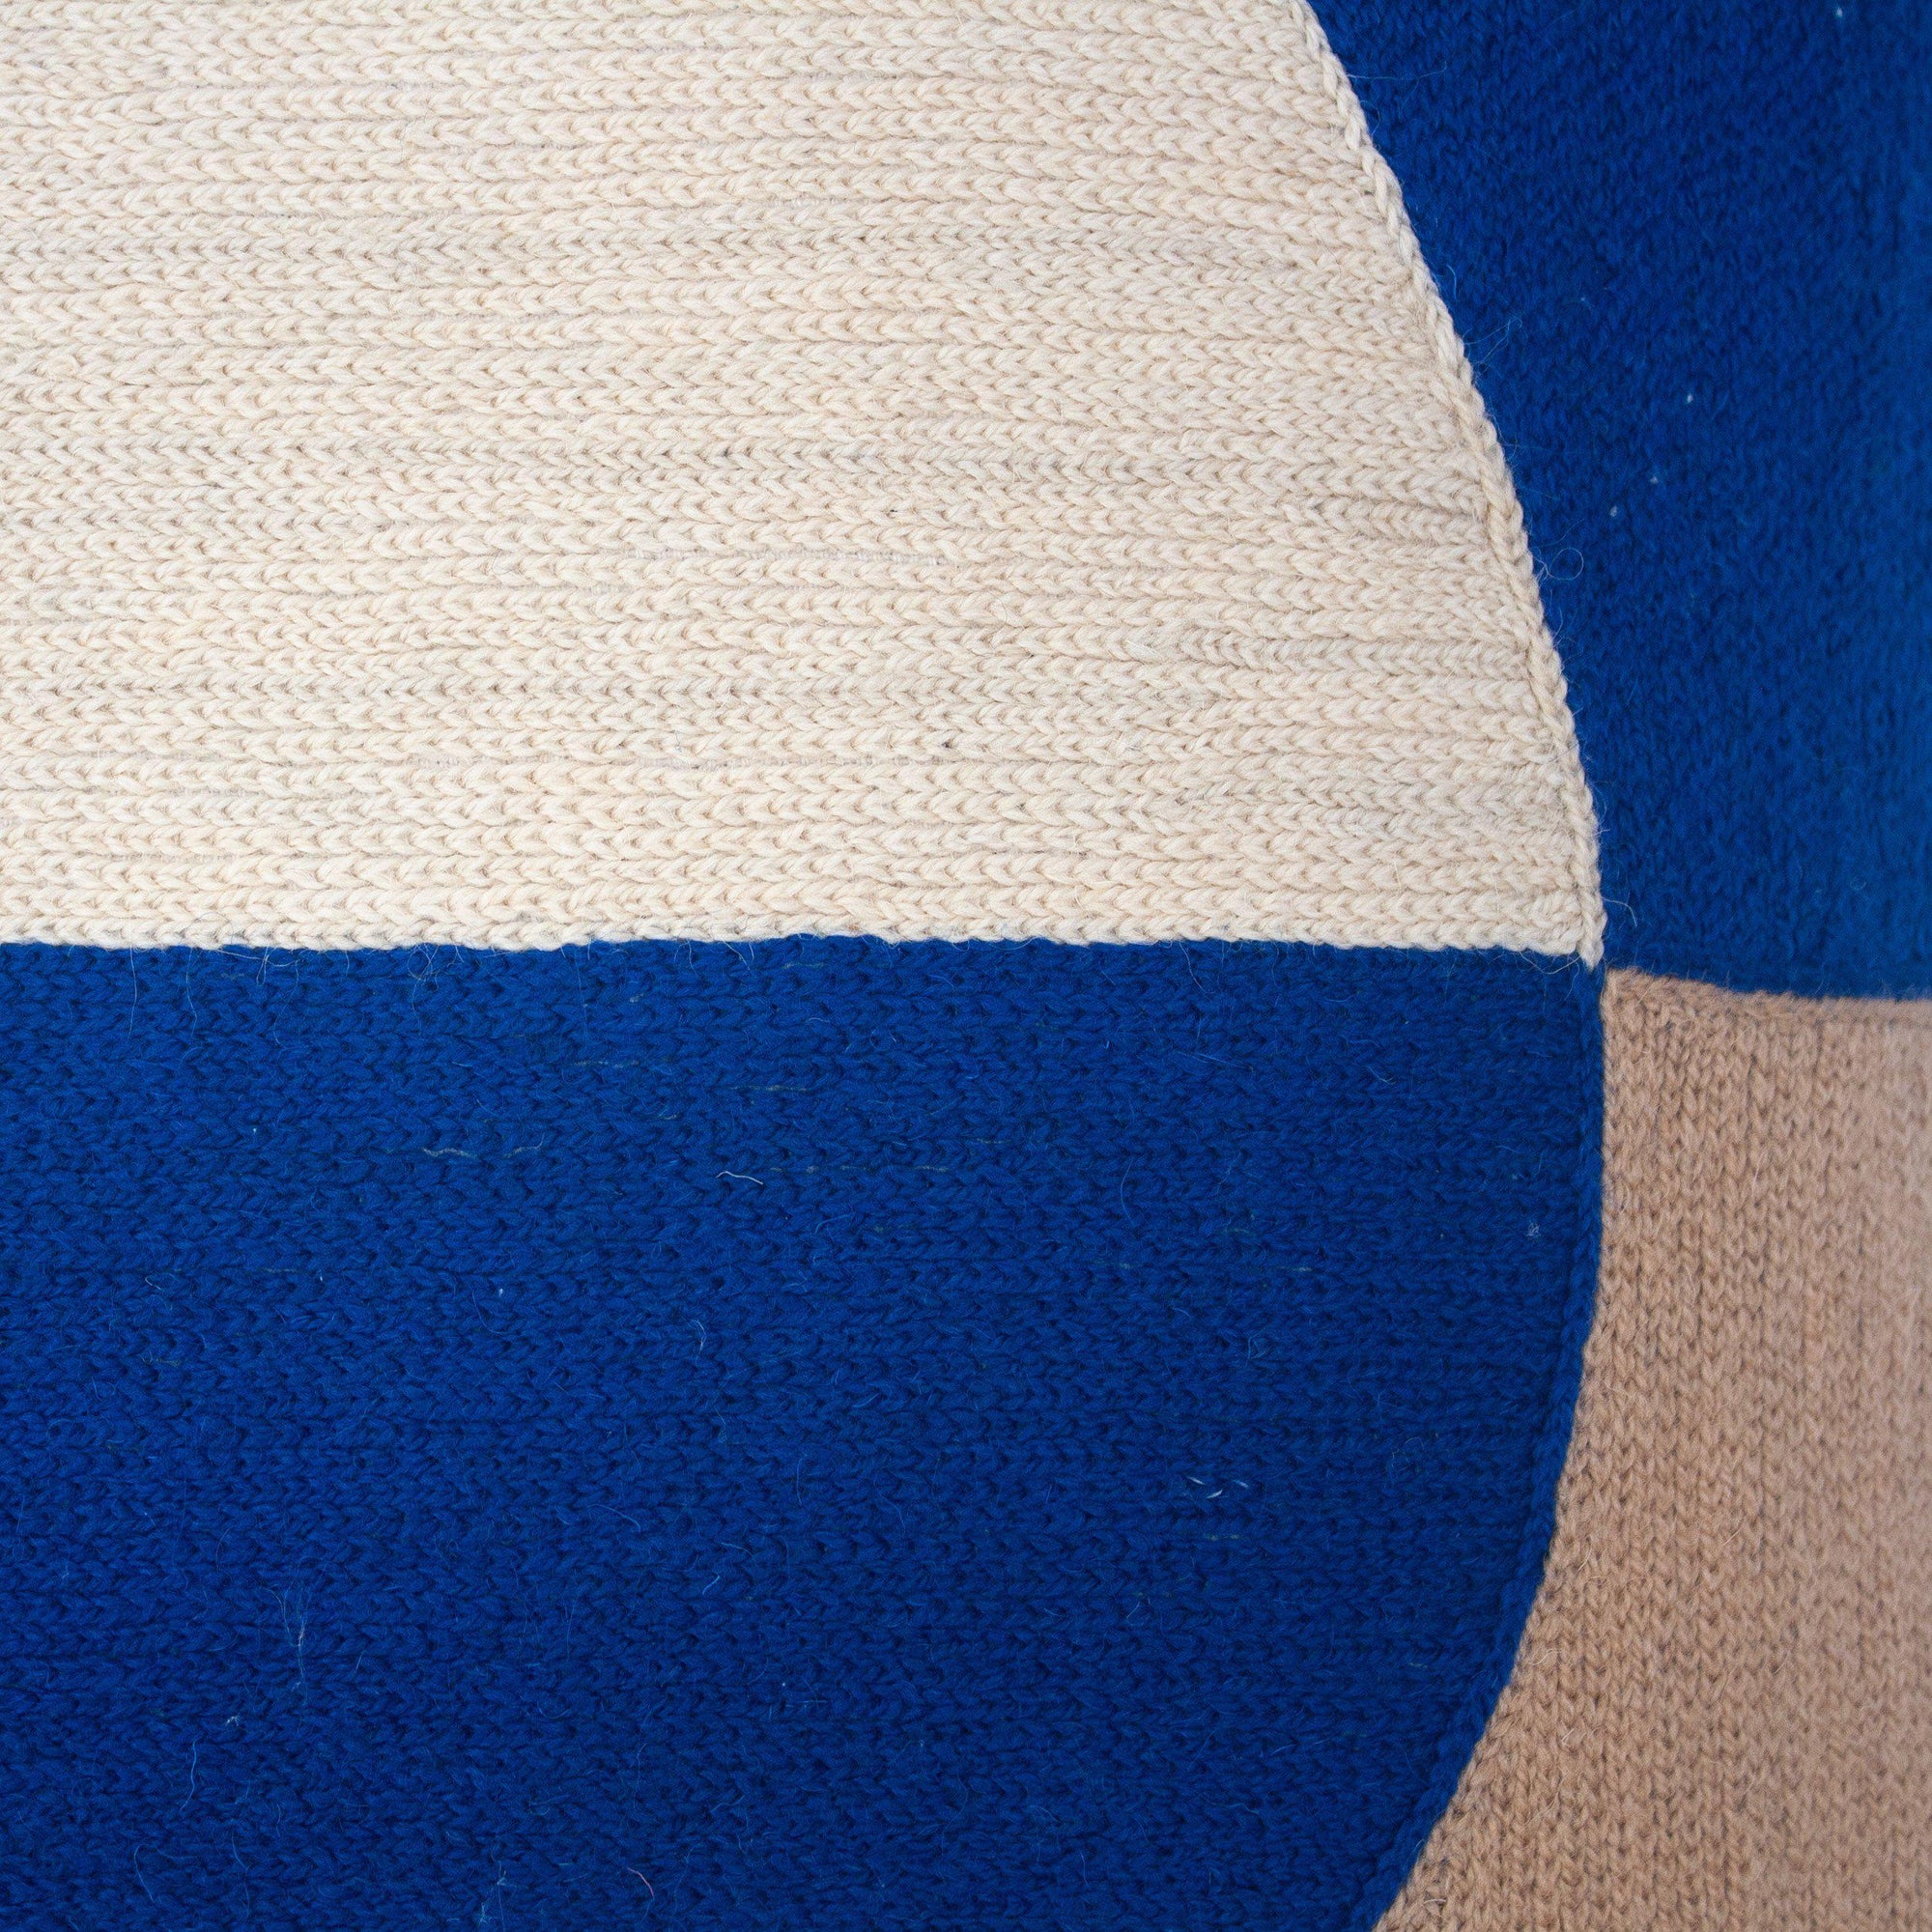 Rugs by Roo | Leah Singh Marianne Circle Pillow - Blue-H17MAE08